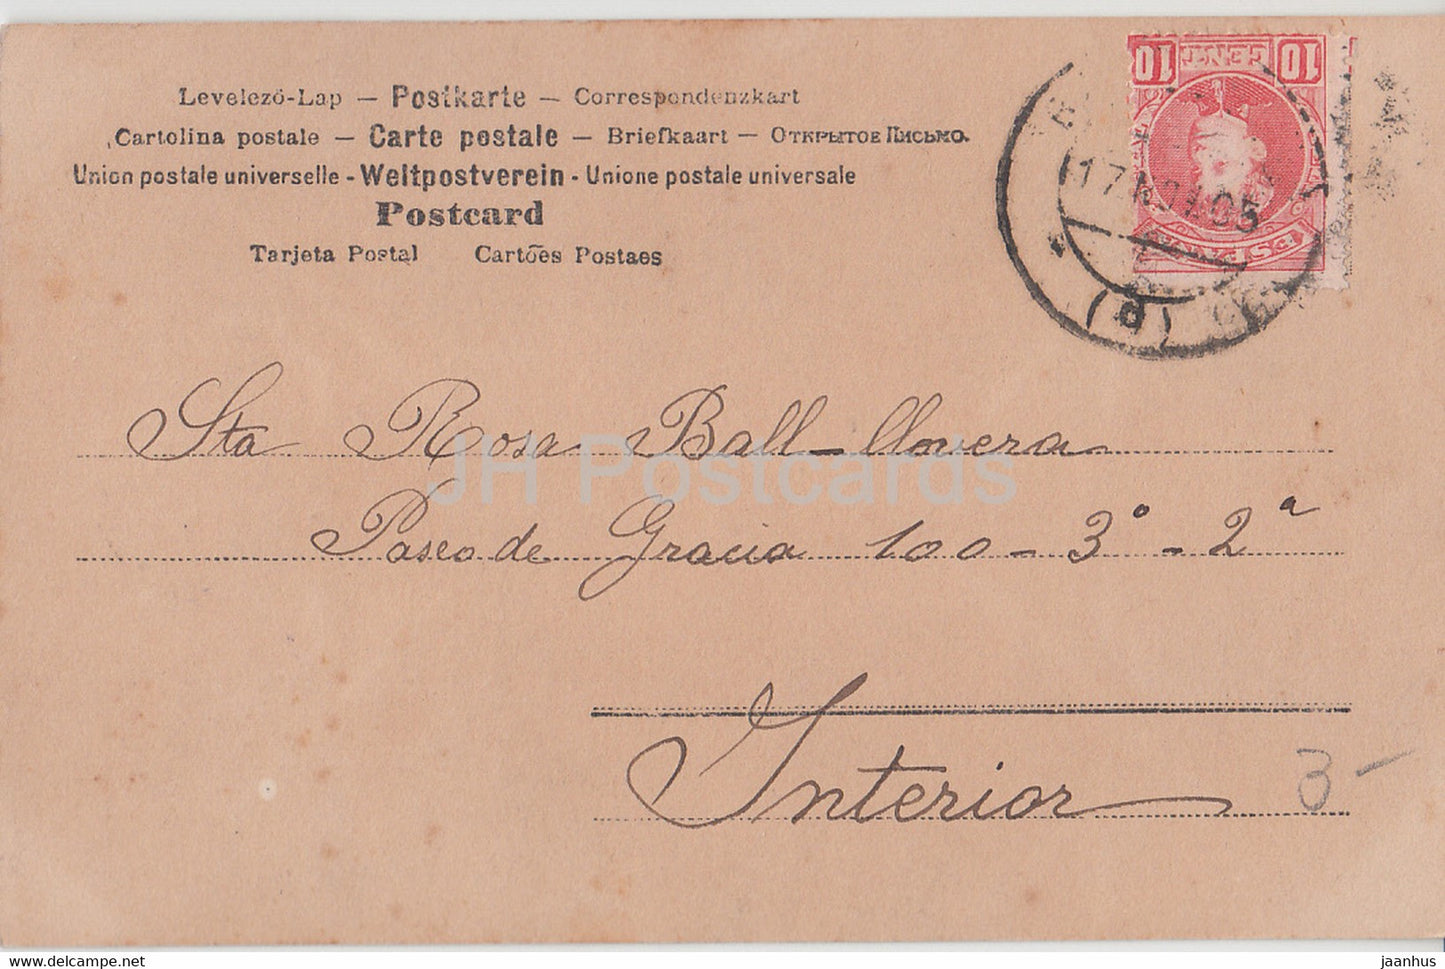 Mädchen – Kinder – 1758 – alte Postkarte – 1900 – Spanien – gebraucht